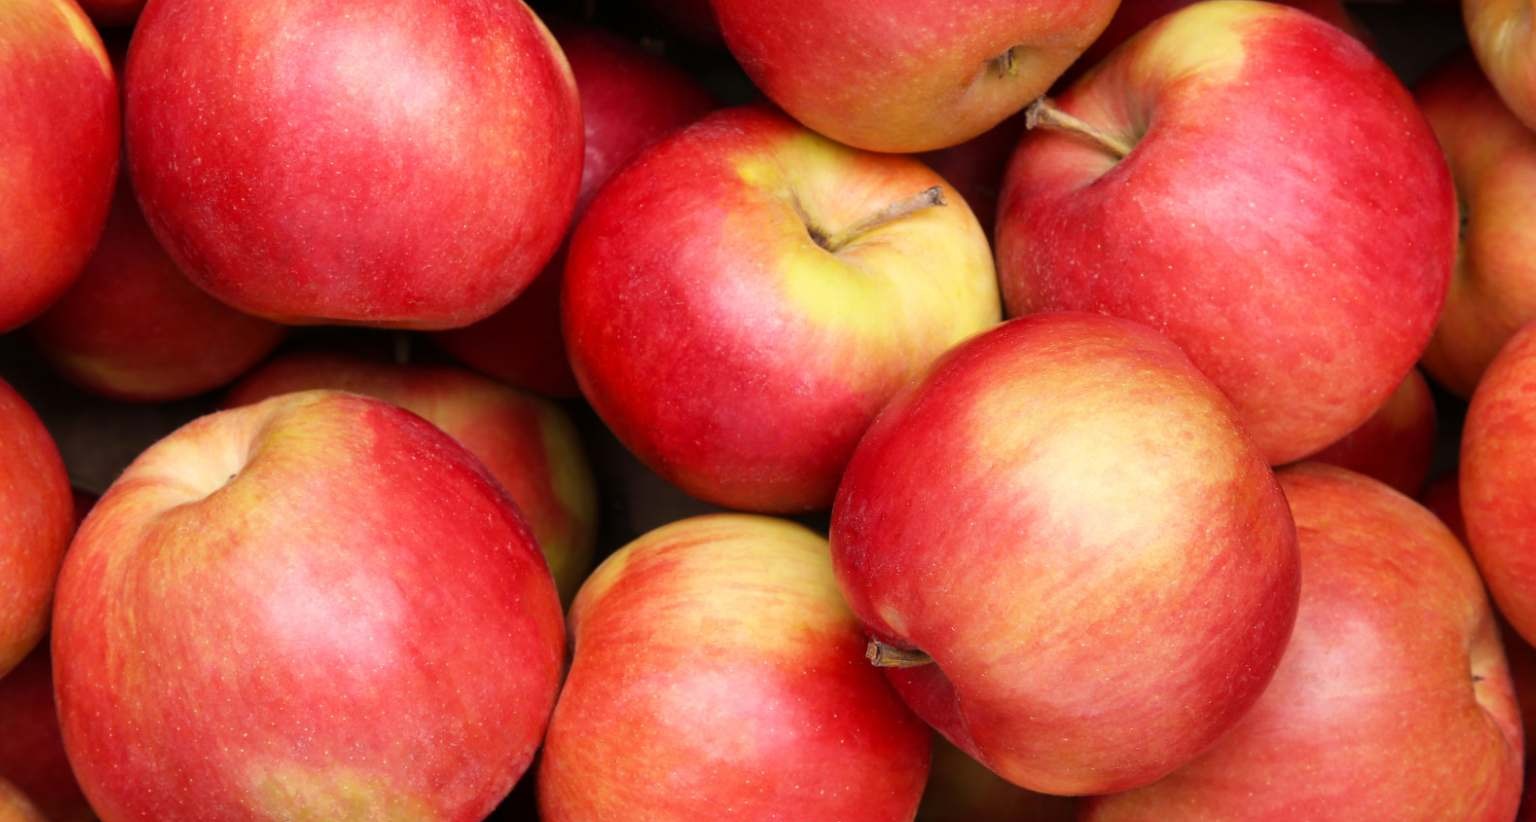 ¿Derechos sobre las manzanas? Apple busca registrar la imagen de la fruta como marca